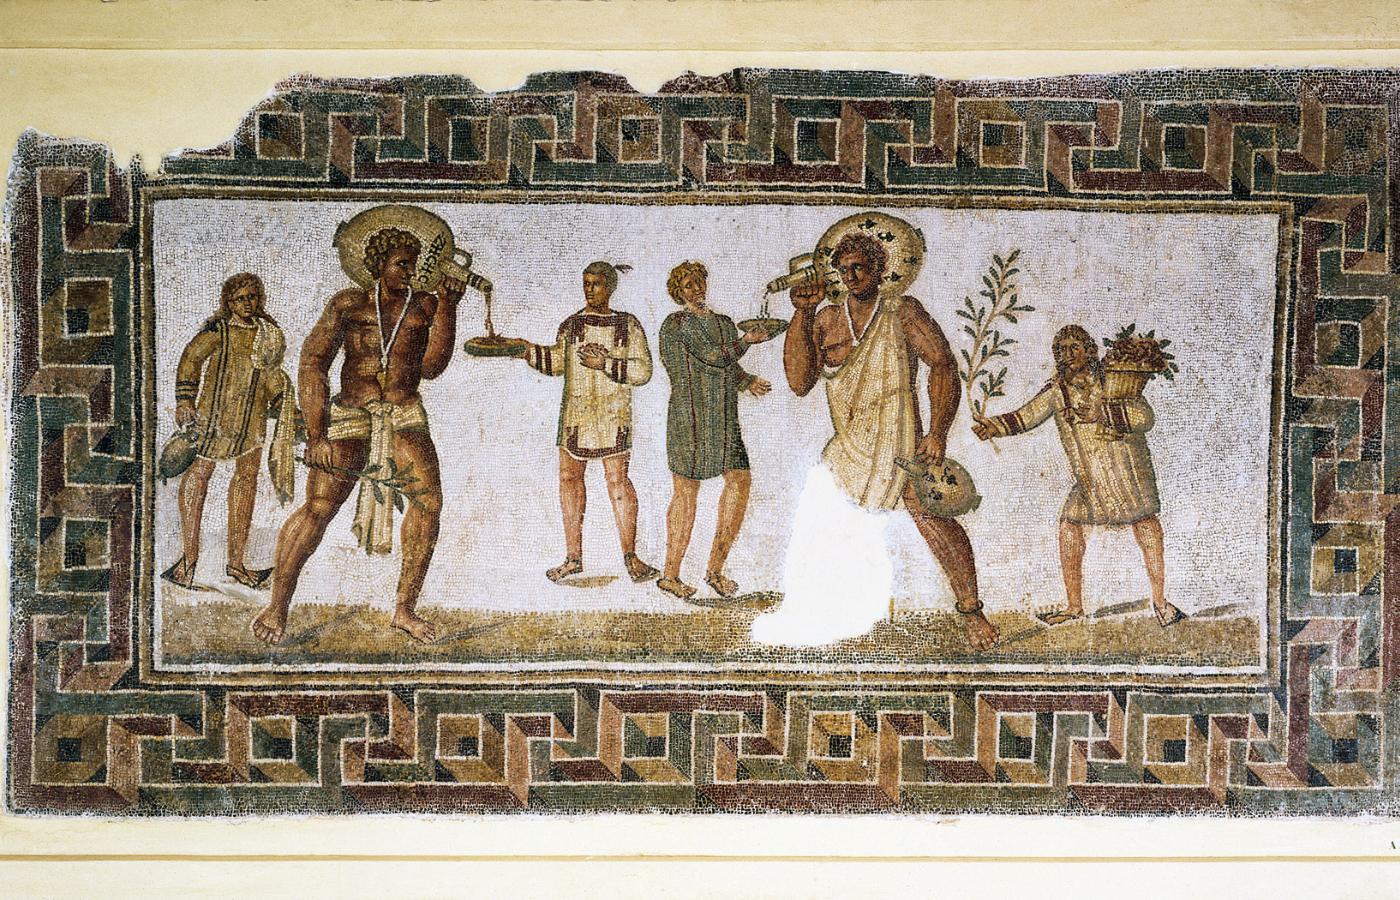 Niewolnicy nalewający wino; mozaika z miejscowości Thugga w rzymskiej prowincji afrykańskiej (dziś Tunezja).